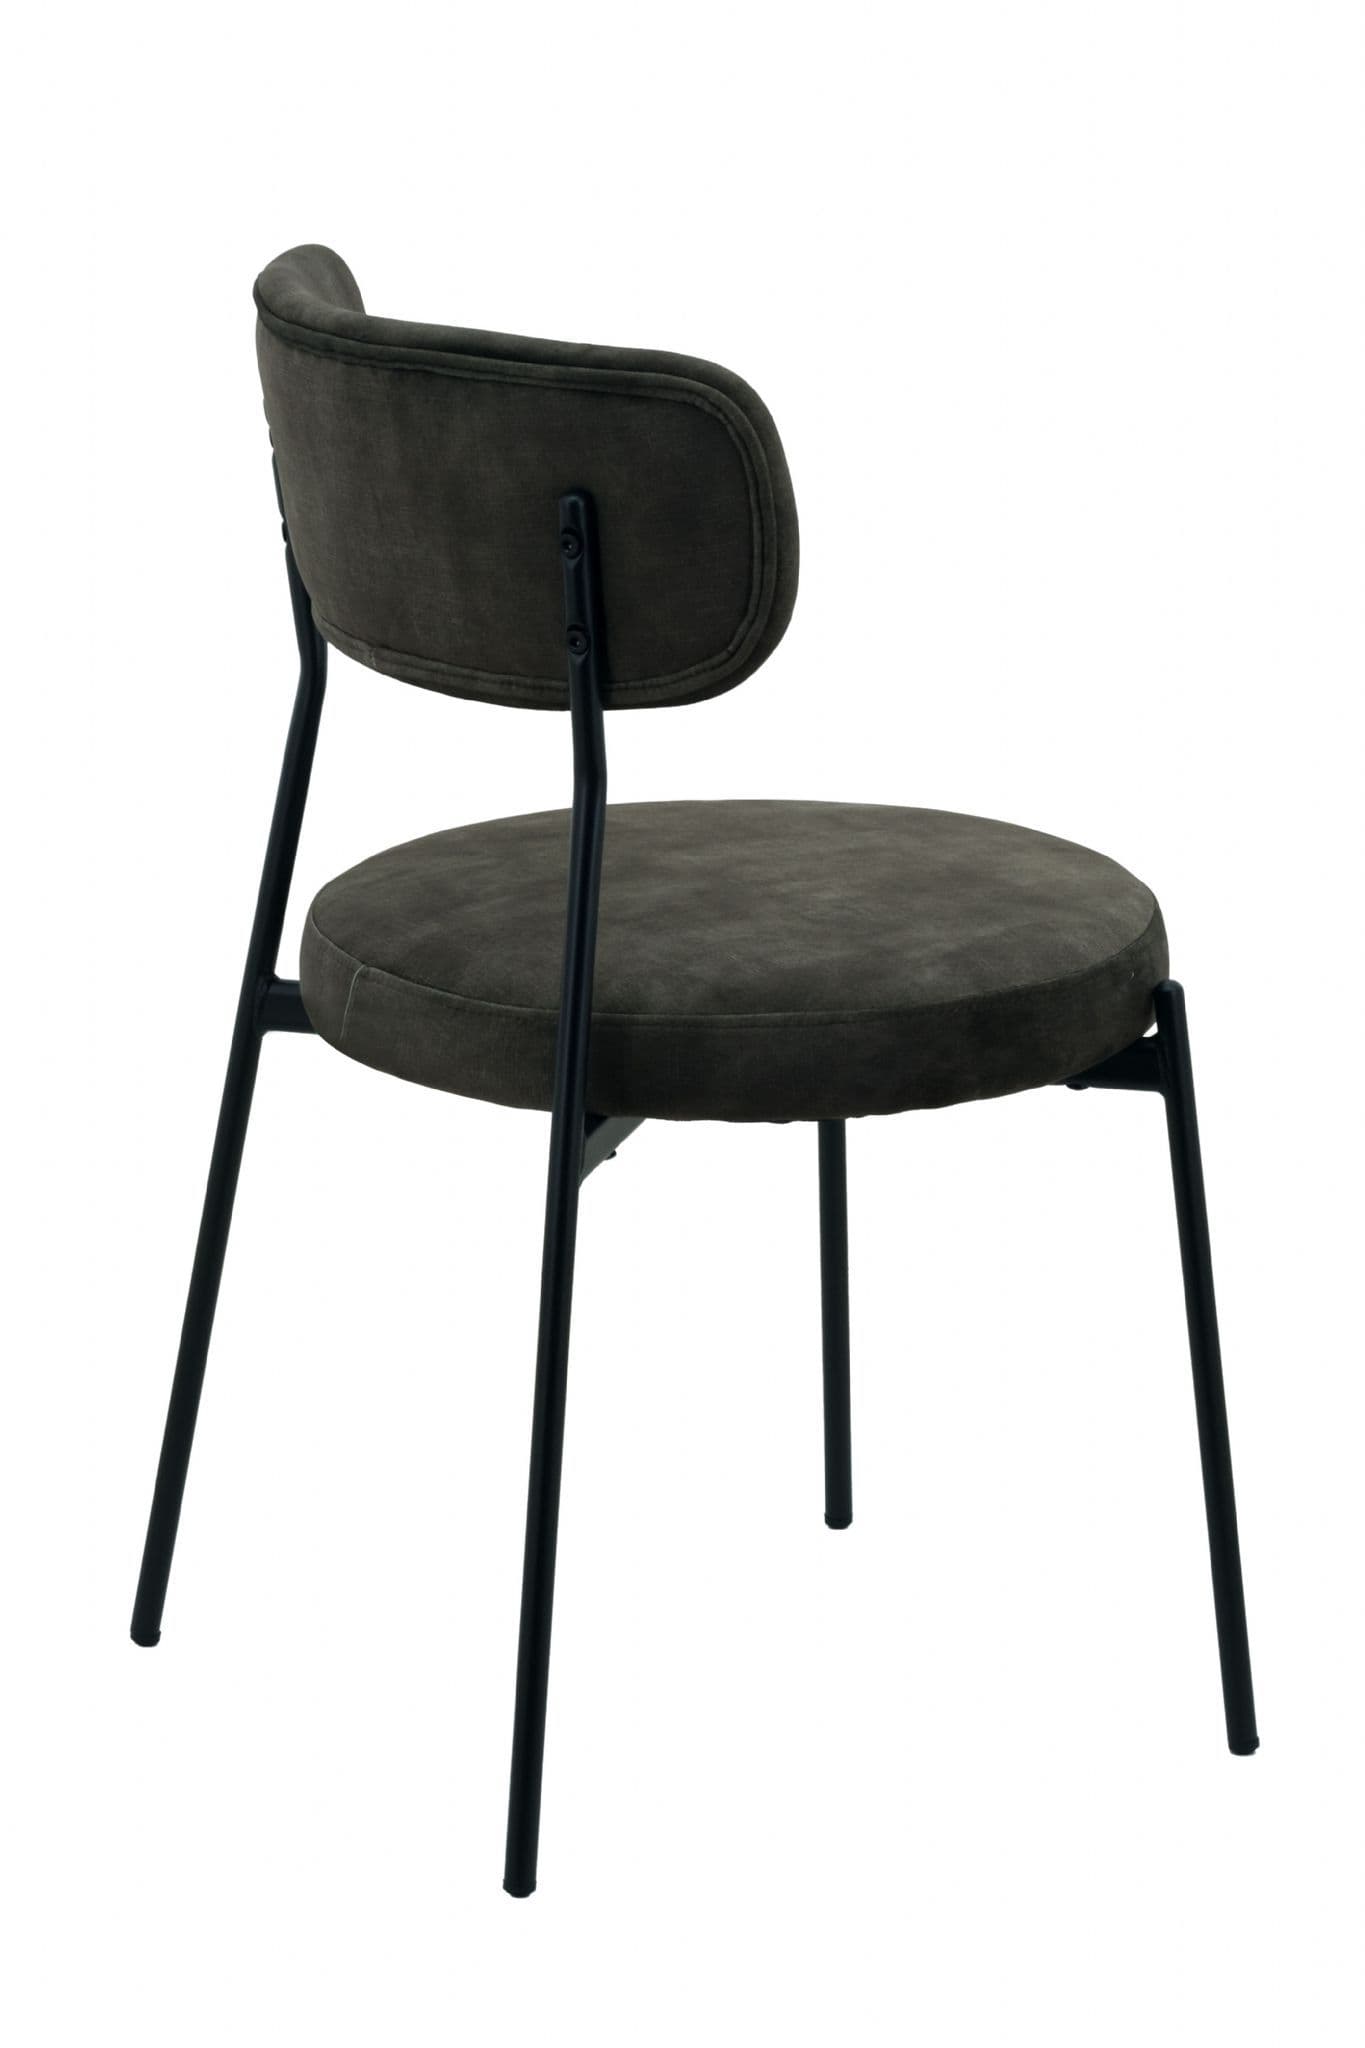 Dark Green Velvet Dining Chairs - Set of 2